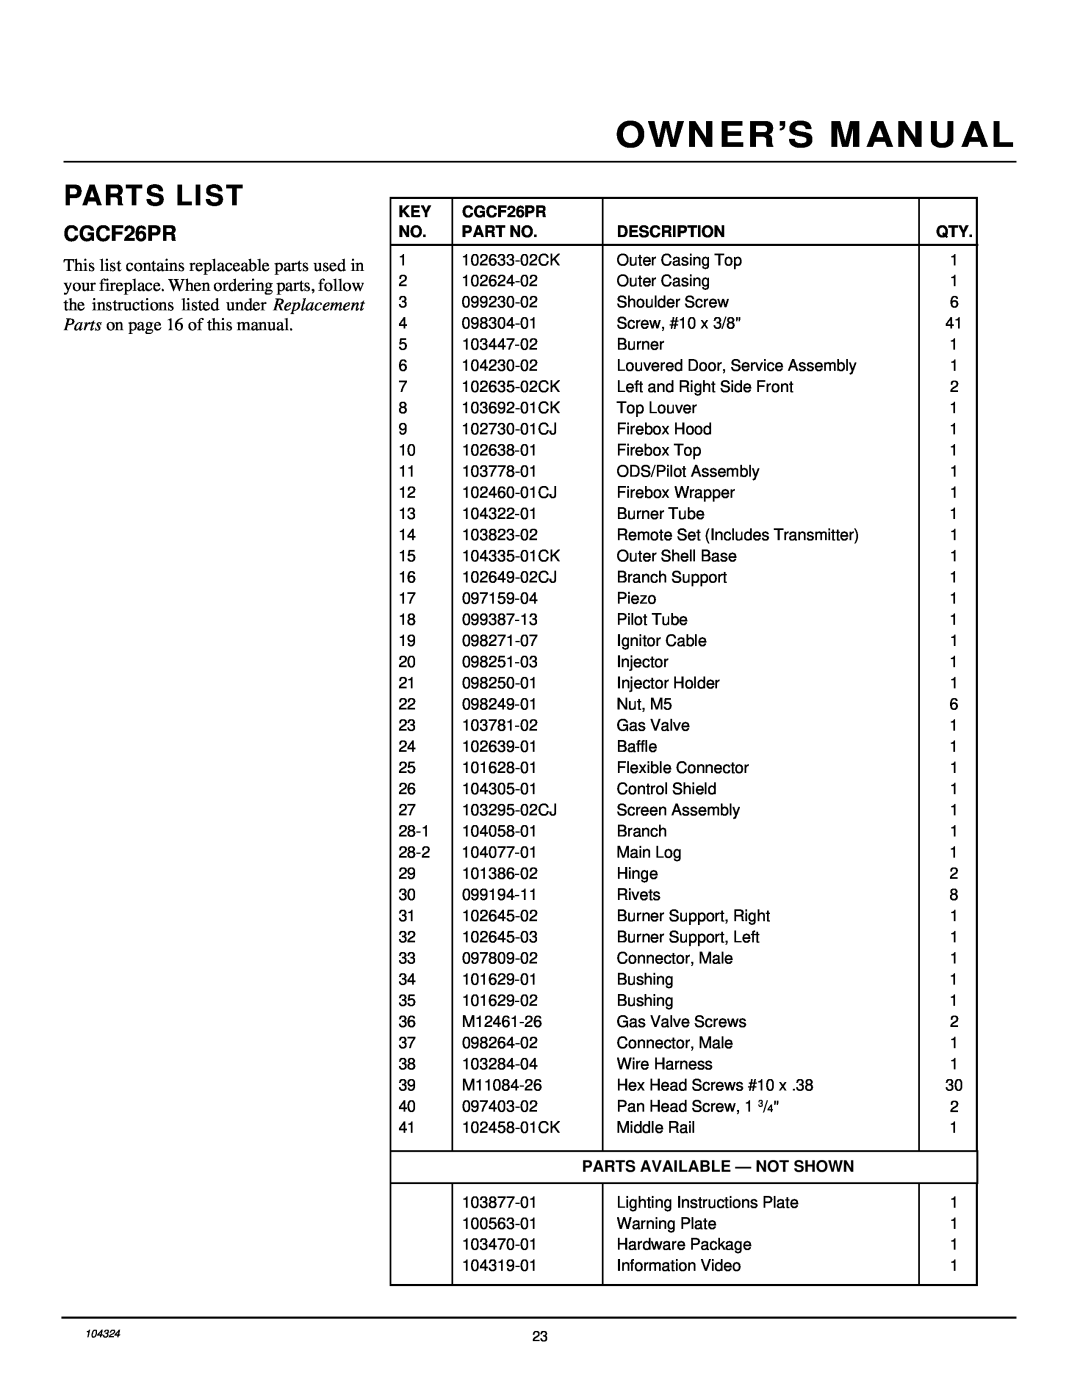 Desa installation manual Parts List, CGCF26PR, Description, Parts Available - Not Shown 